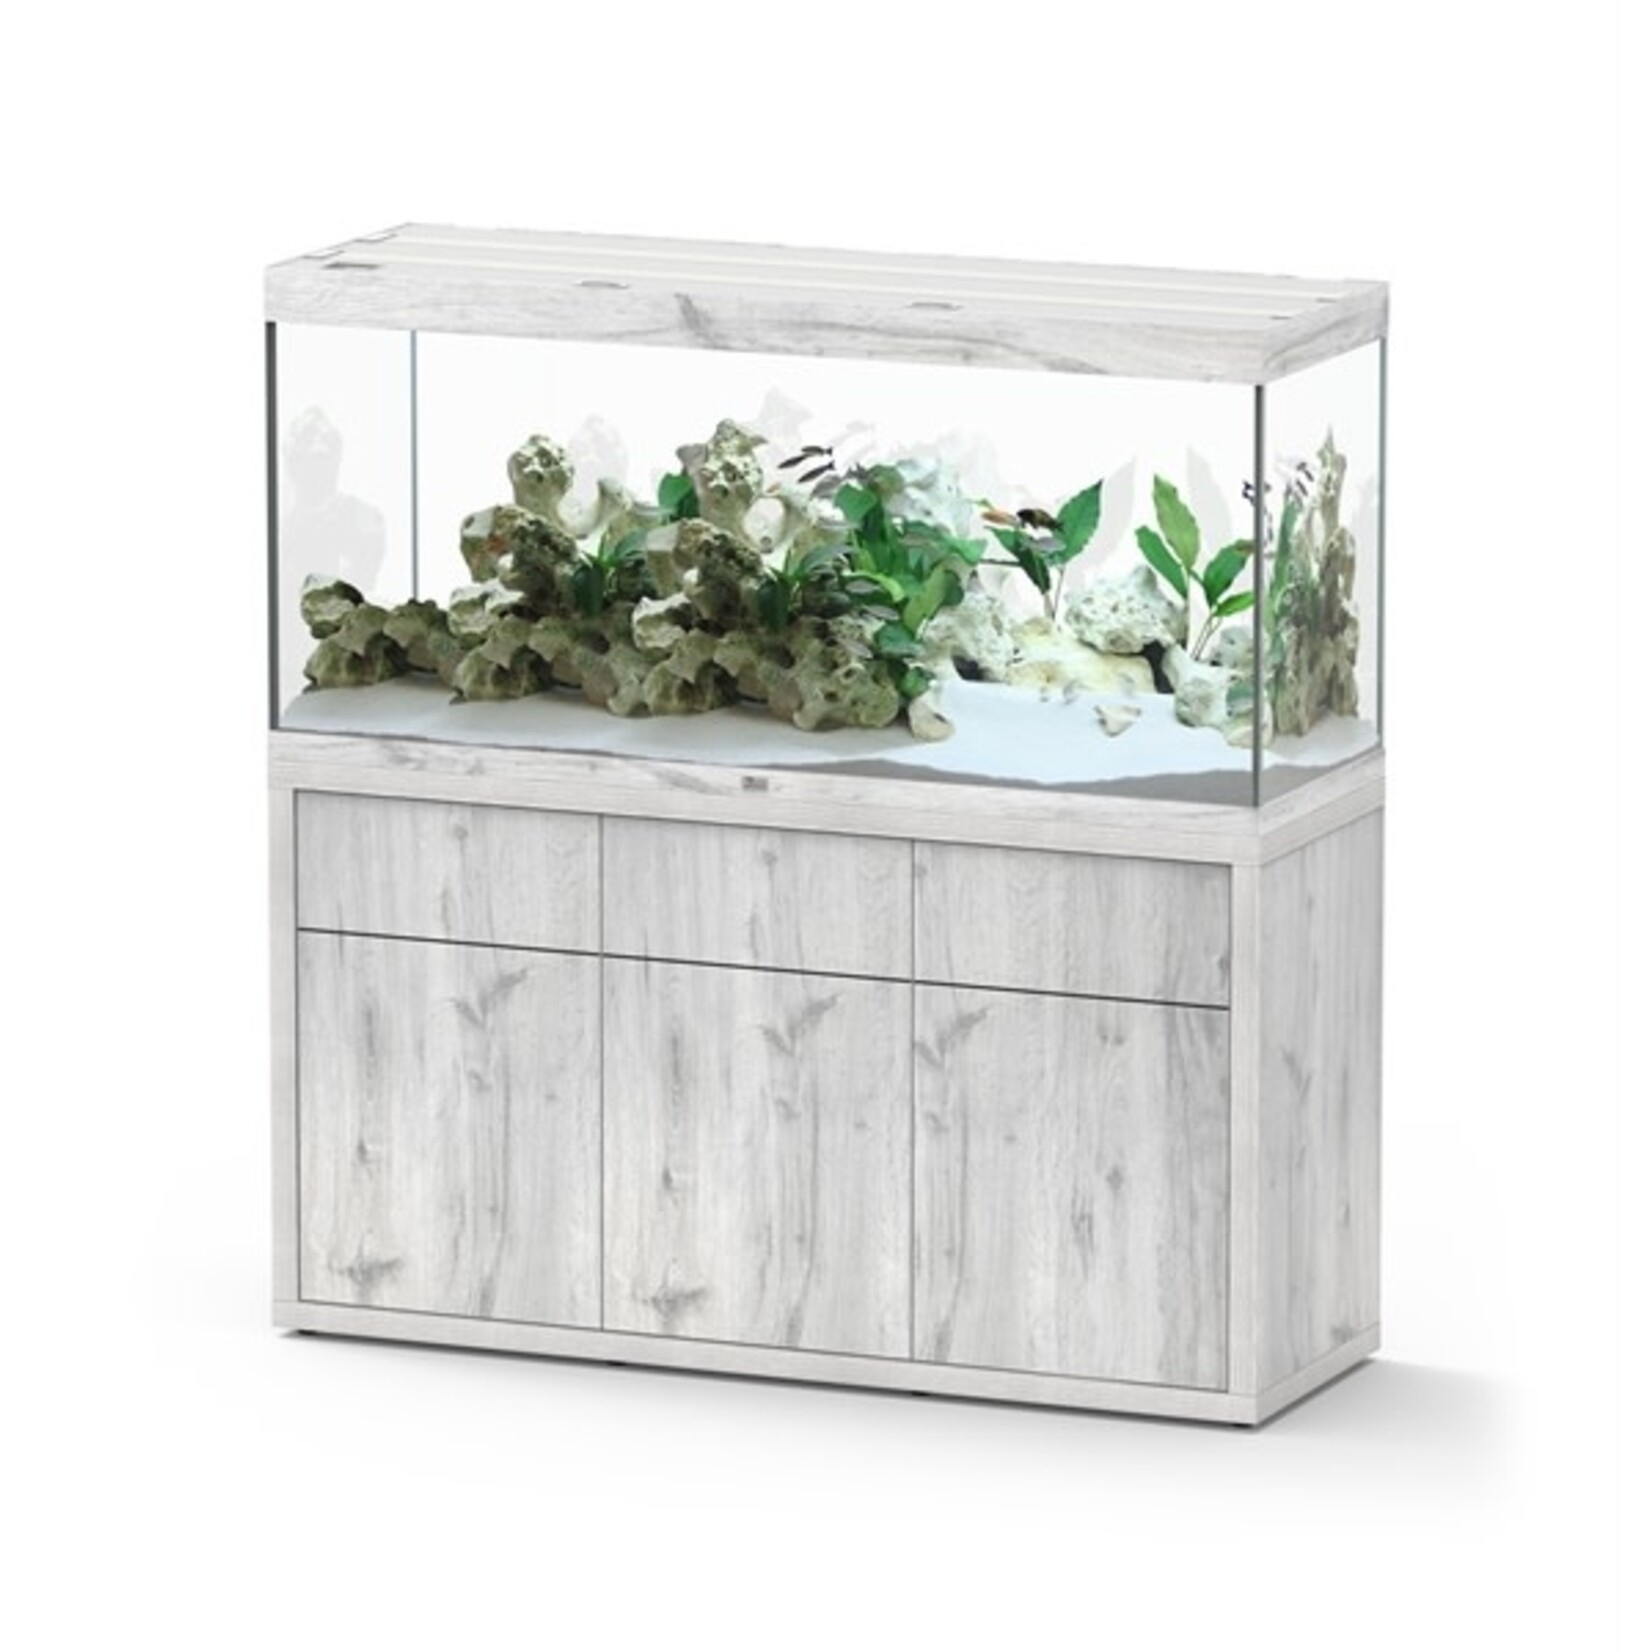 Aquatlantis Aquarium sublime 150x50 cm whitewash-088